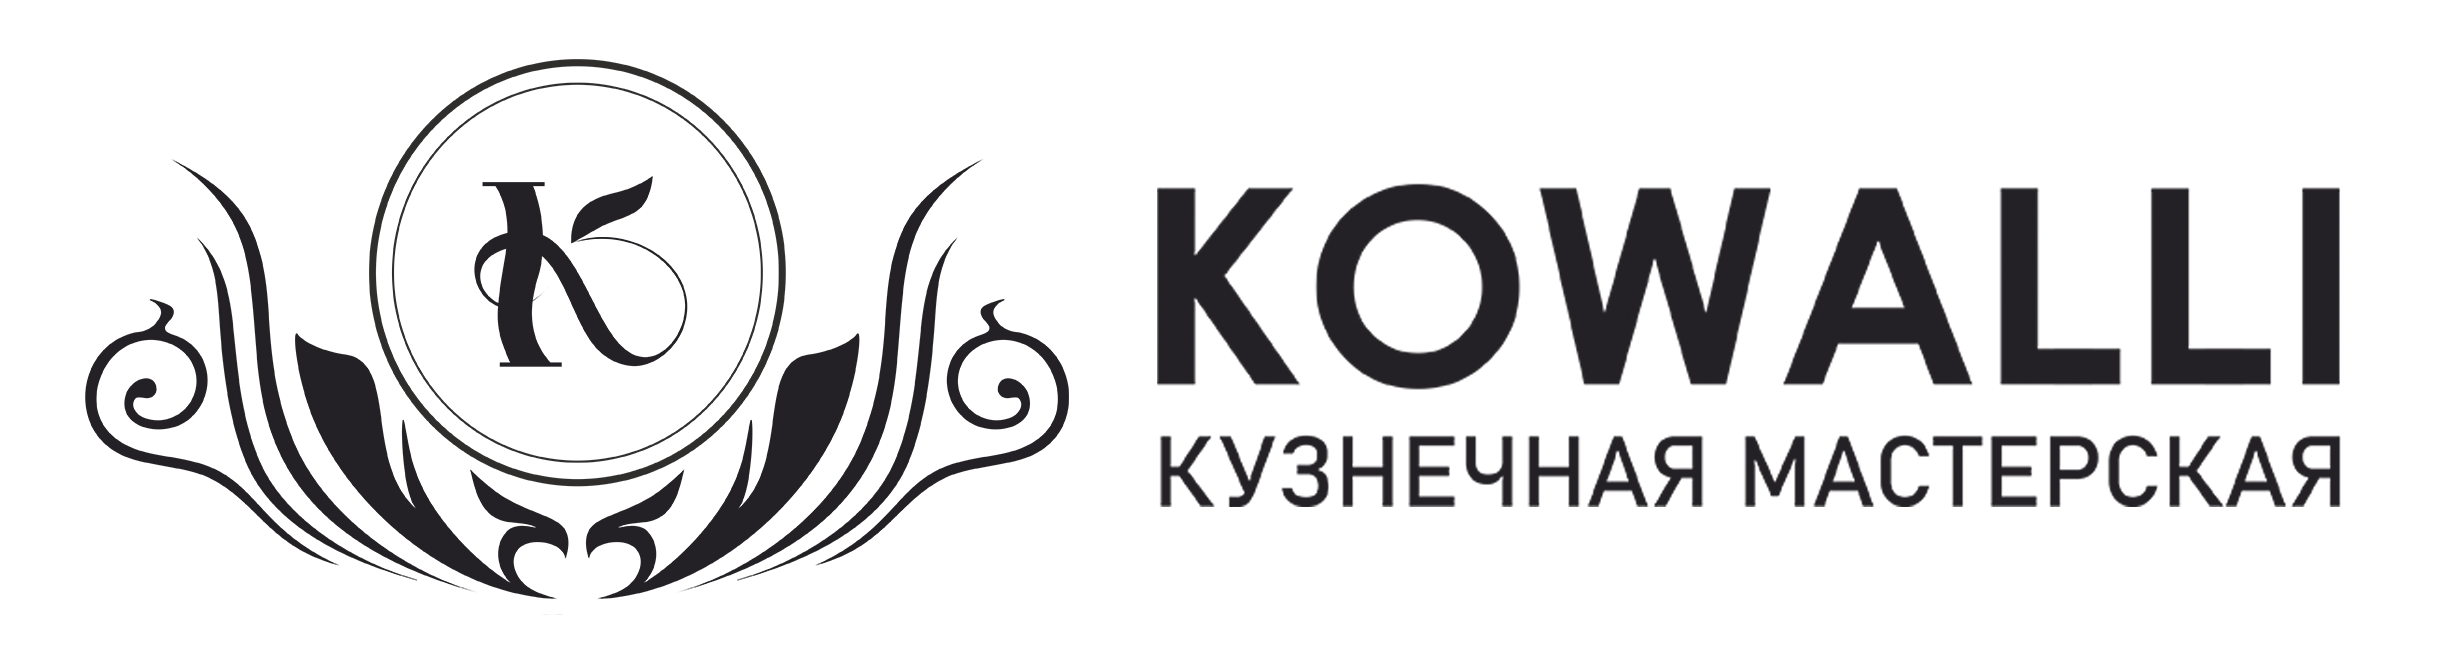 ИП БЕЛОВ СЕРГЕЙ ЕВГЕНЬЕВИЧ - Город Кострома logo.png